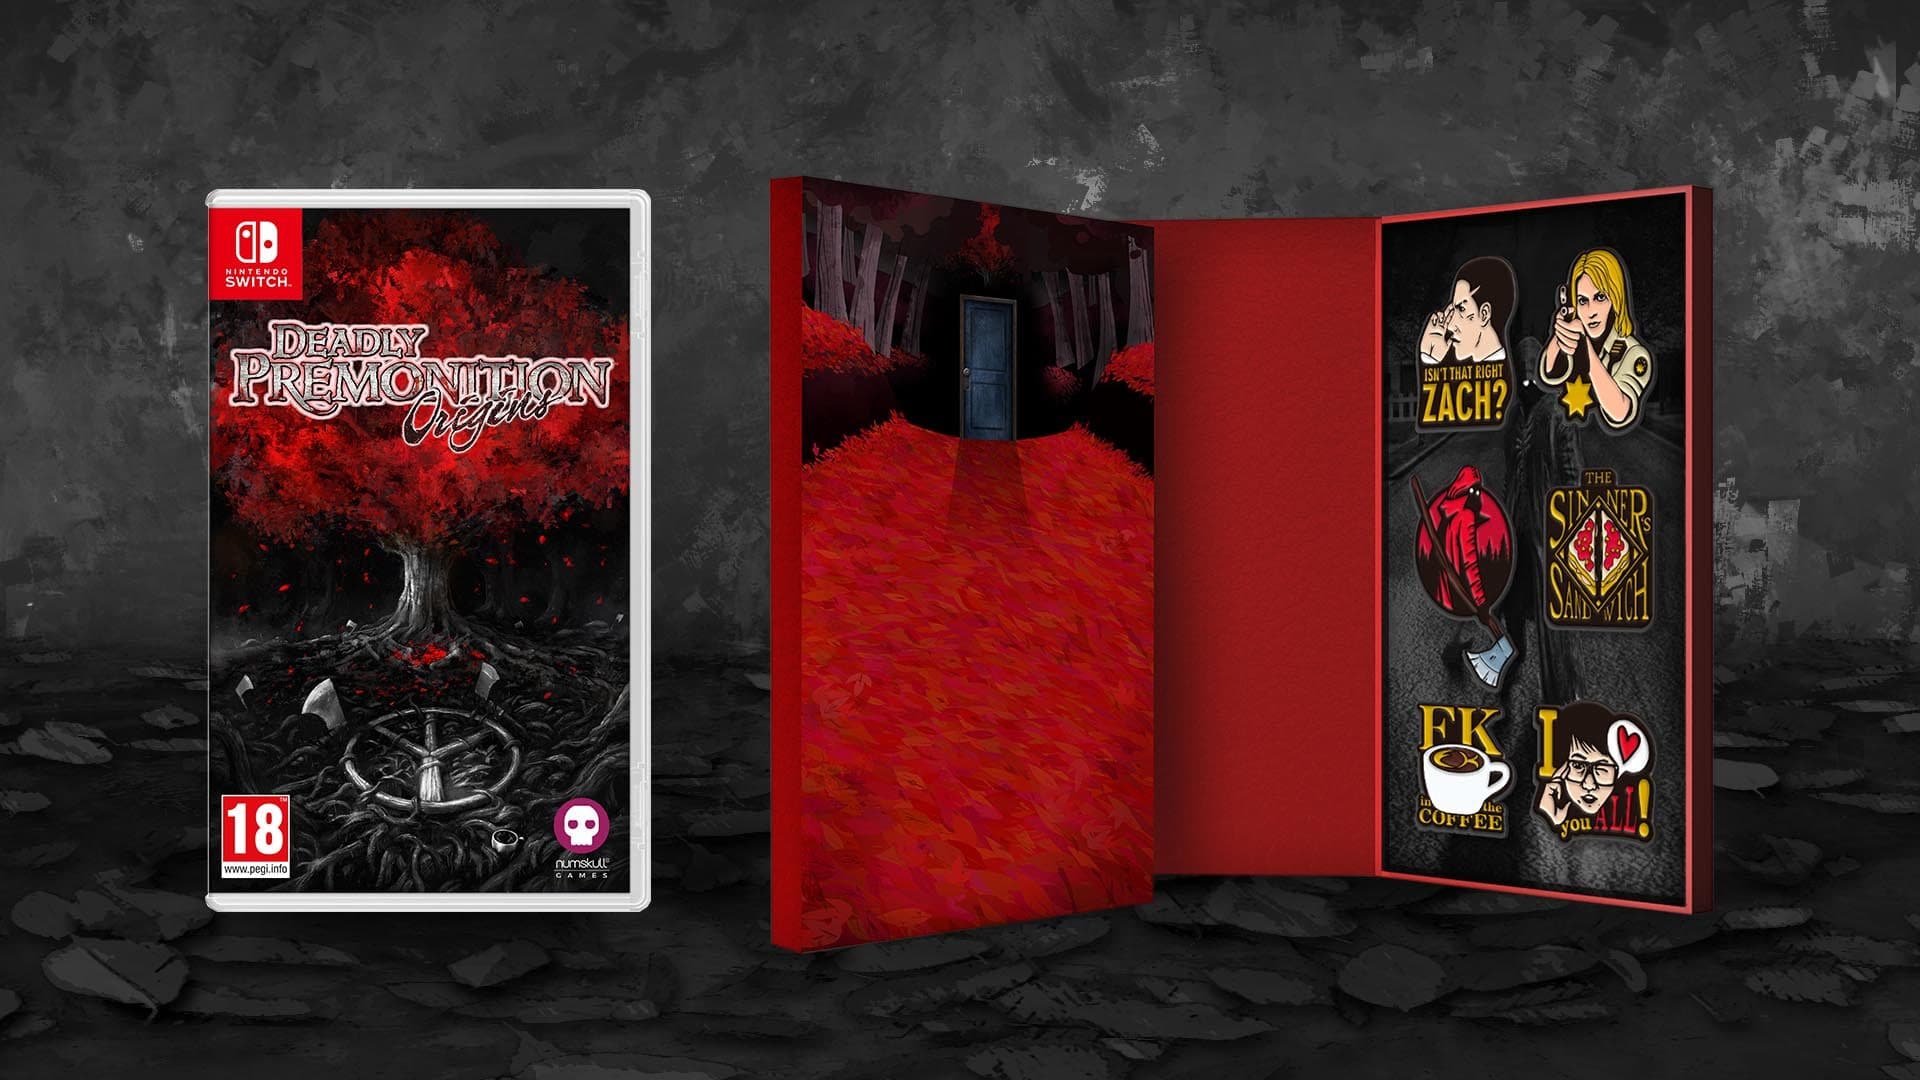 La edición en formato físico de Deadly Premonition: Origins llegará a España de la mano de Meridiem Games